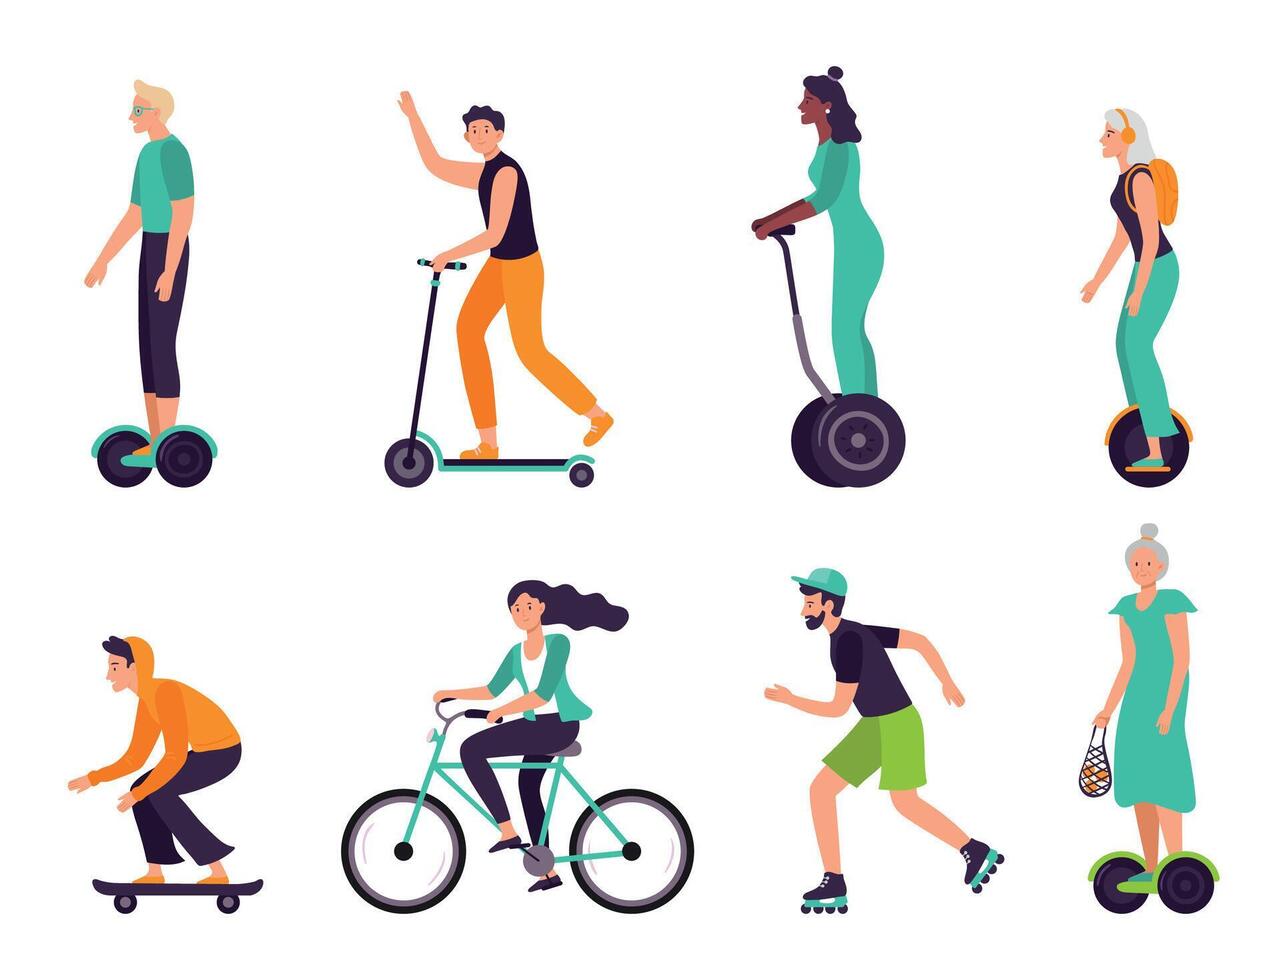 attivo persone salutare stile di vita. eco amichevole trasporto, persone di diverso età equitazione moderno veicoli come scooter vettore